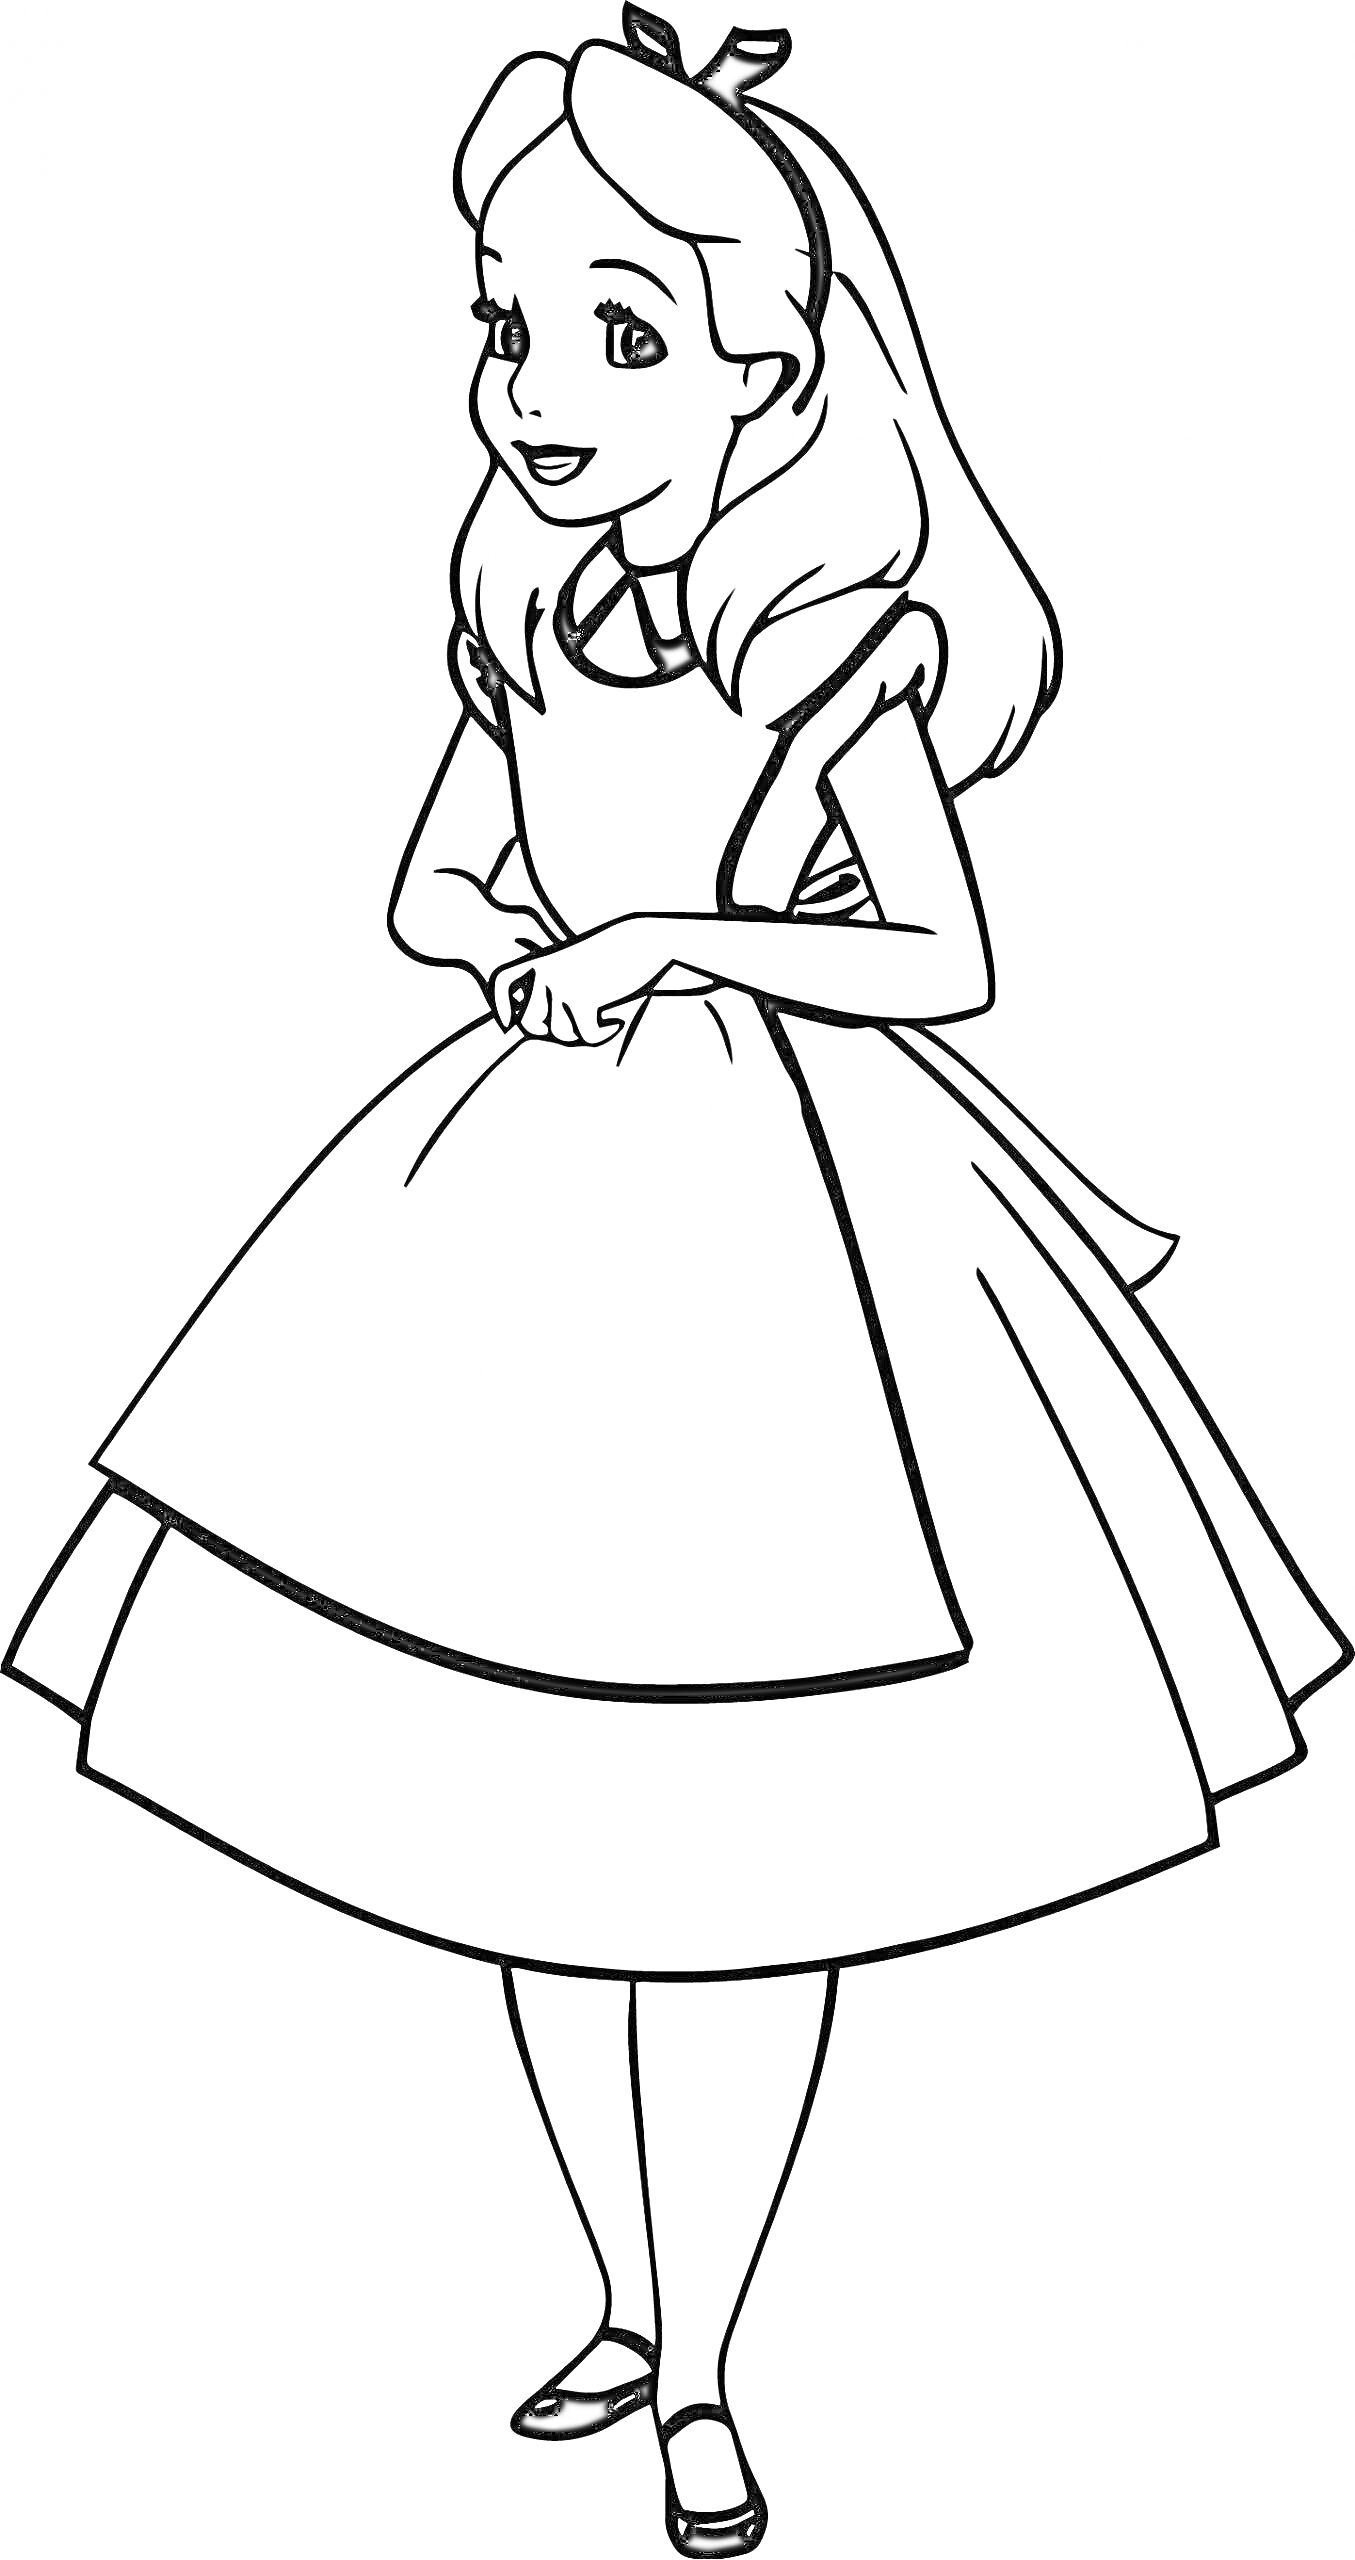 Раскраска Алиса в стране чудес, Алиса стоит в платье и держит руки перед собой, улыбка, волосы с бантиком